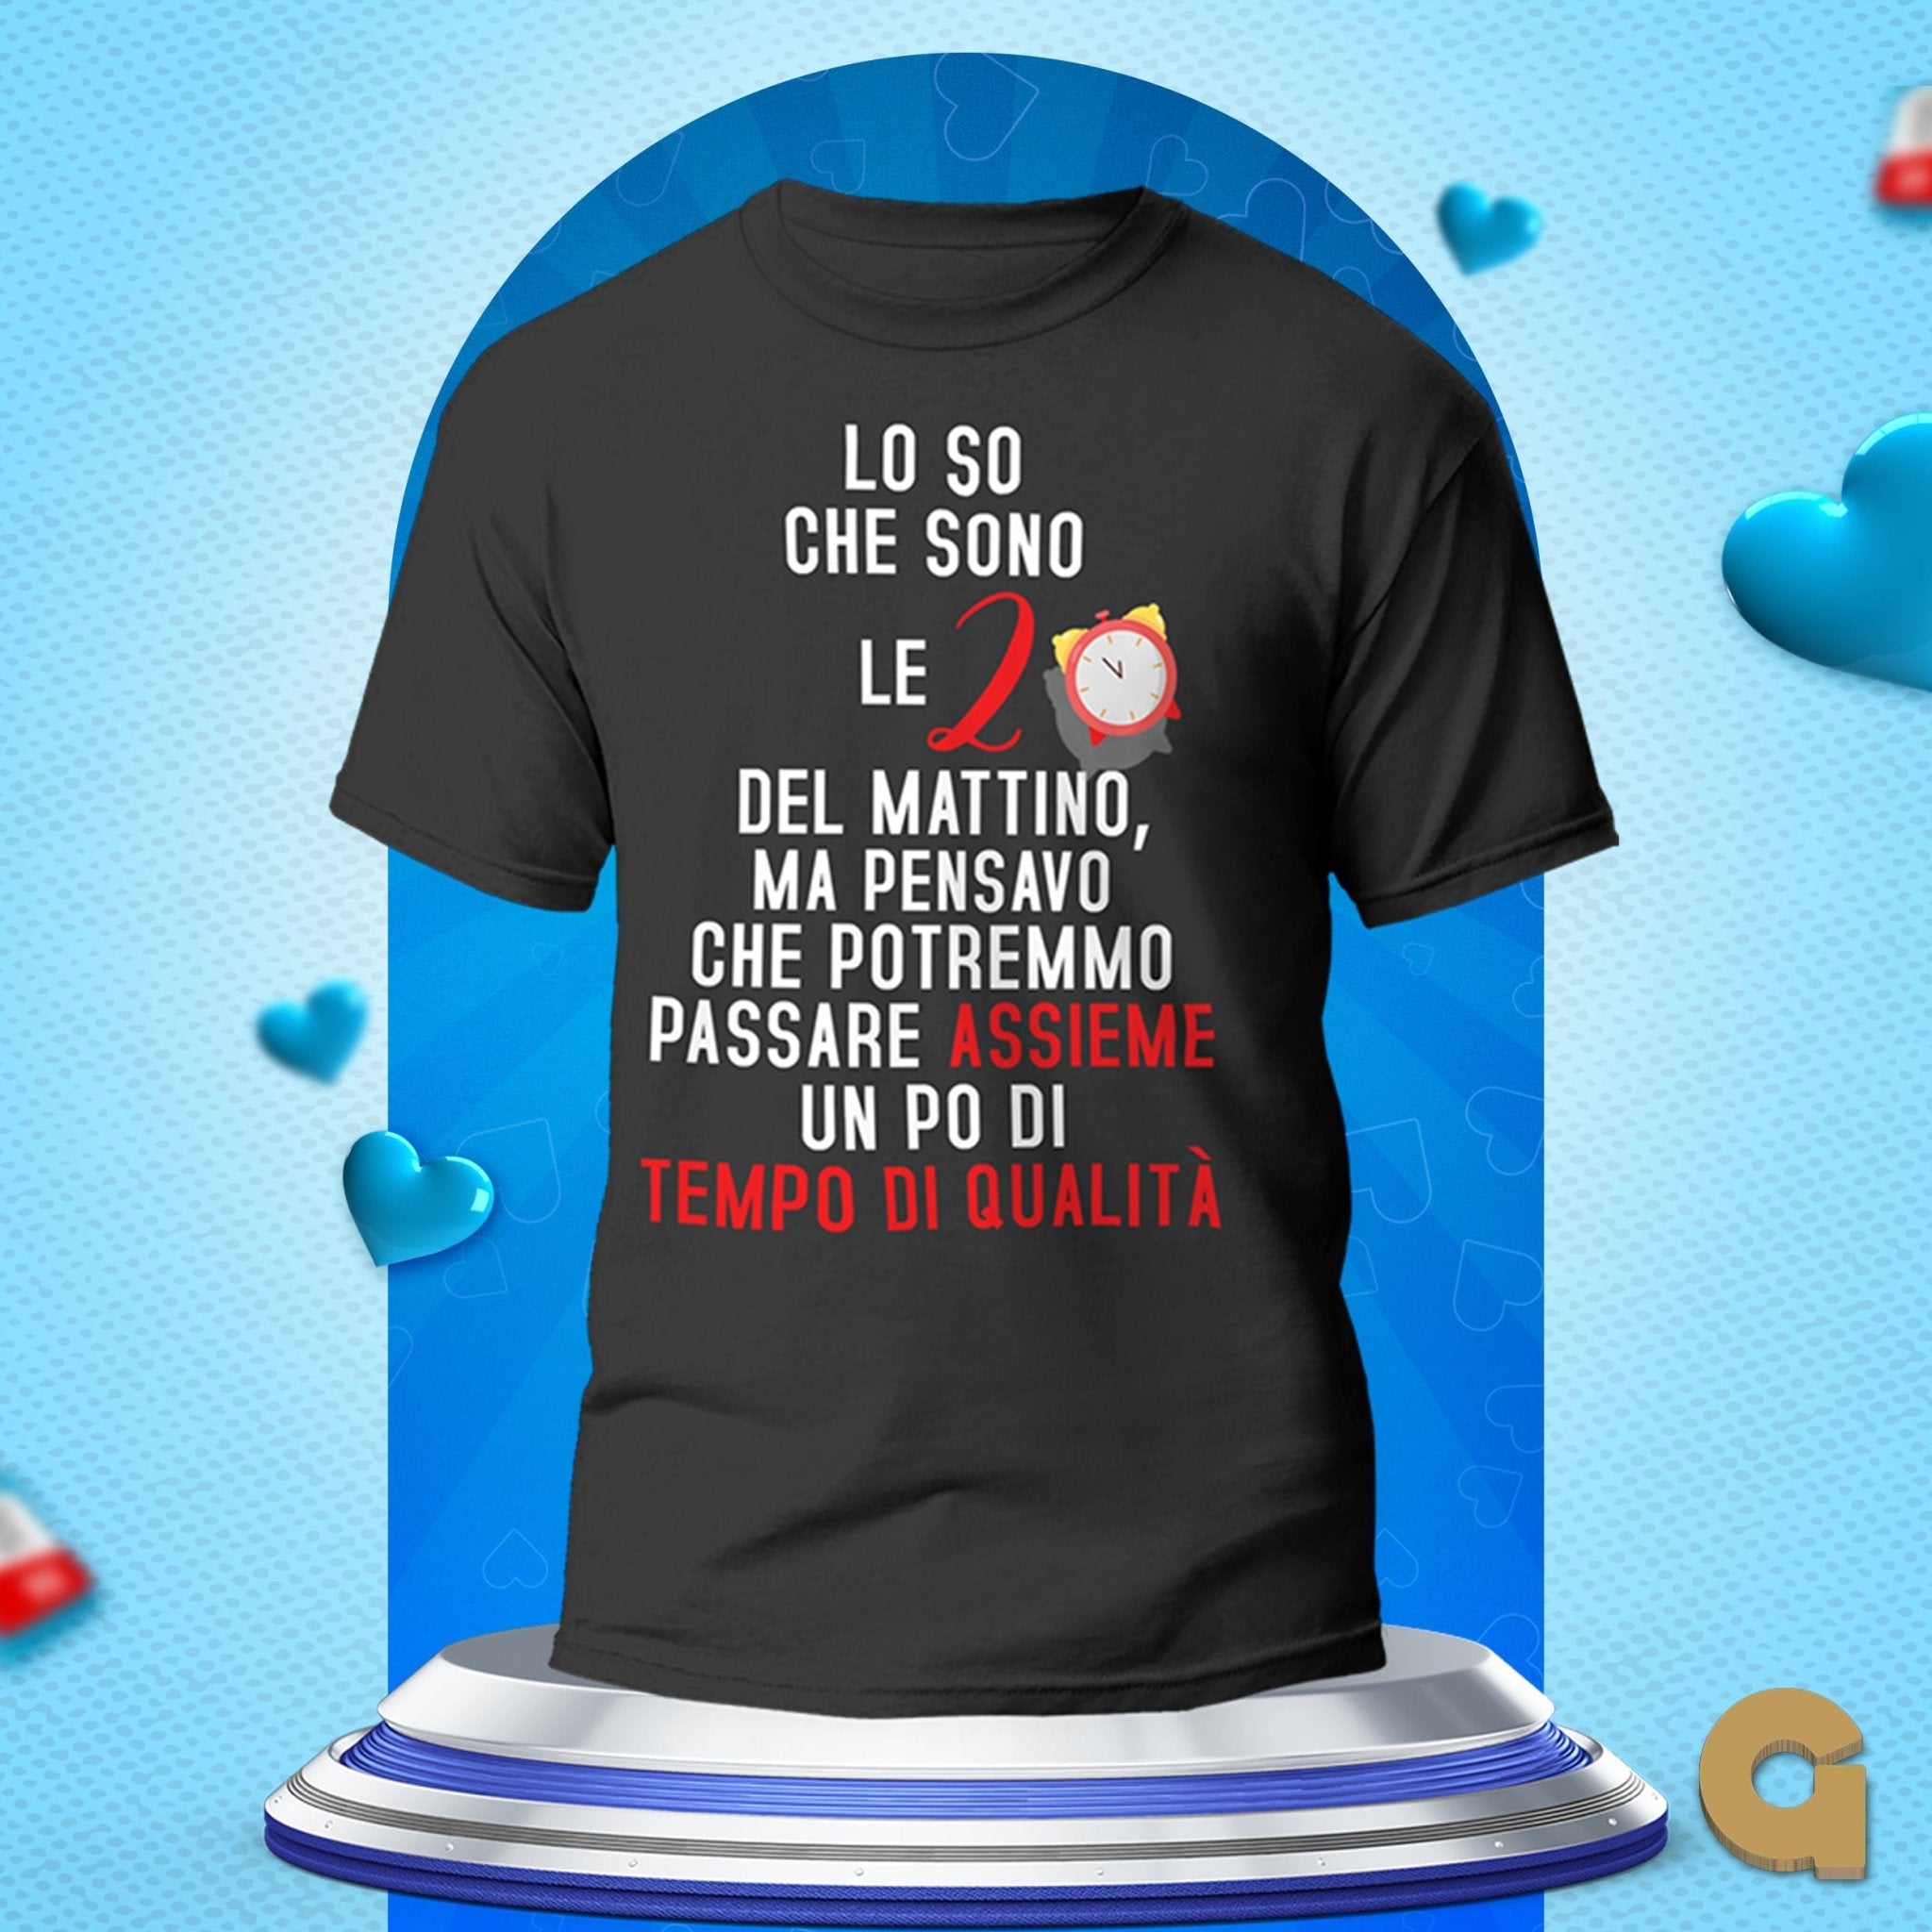 T-shirt festa del Papà - Copisteria Graphic